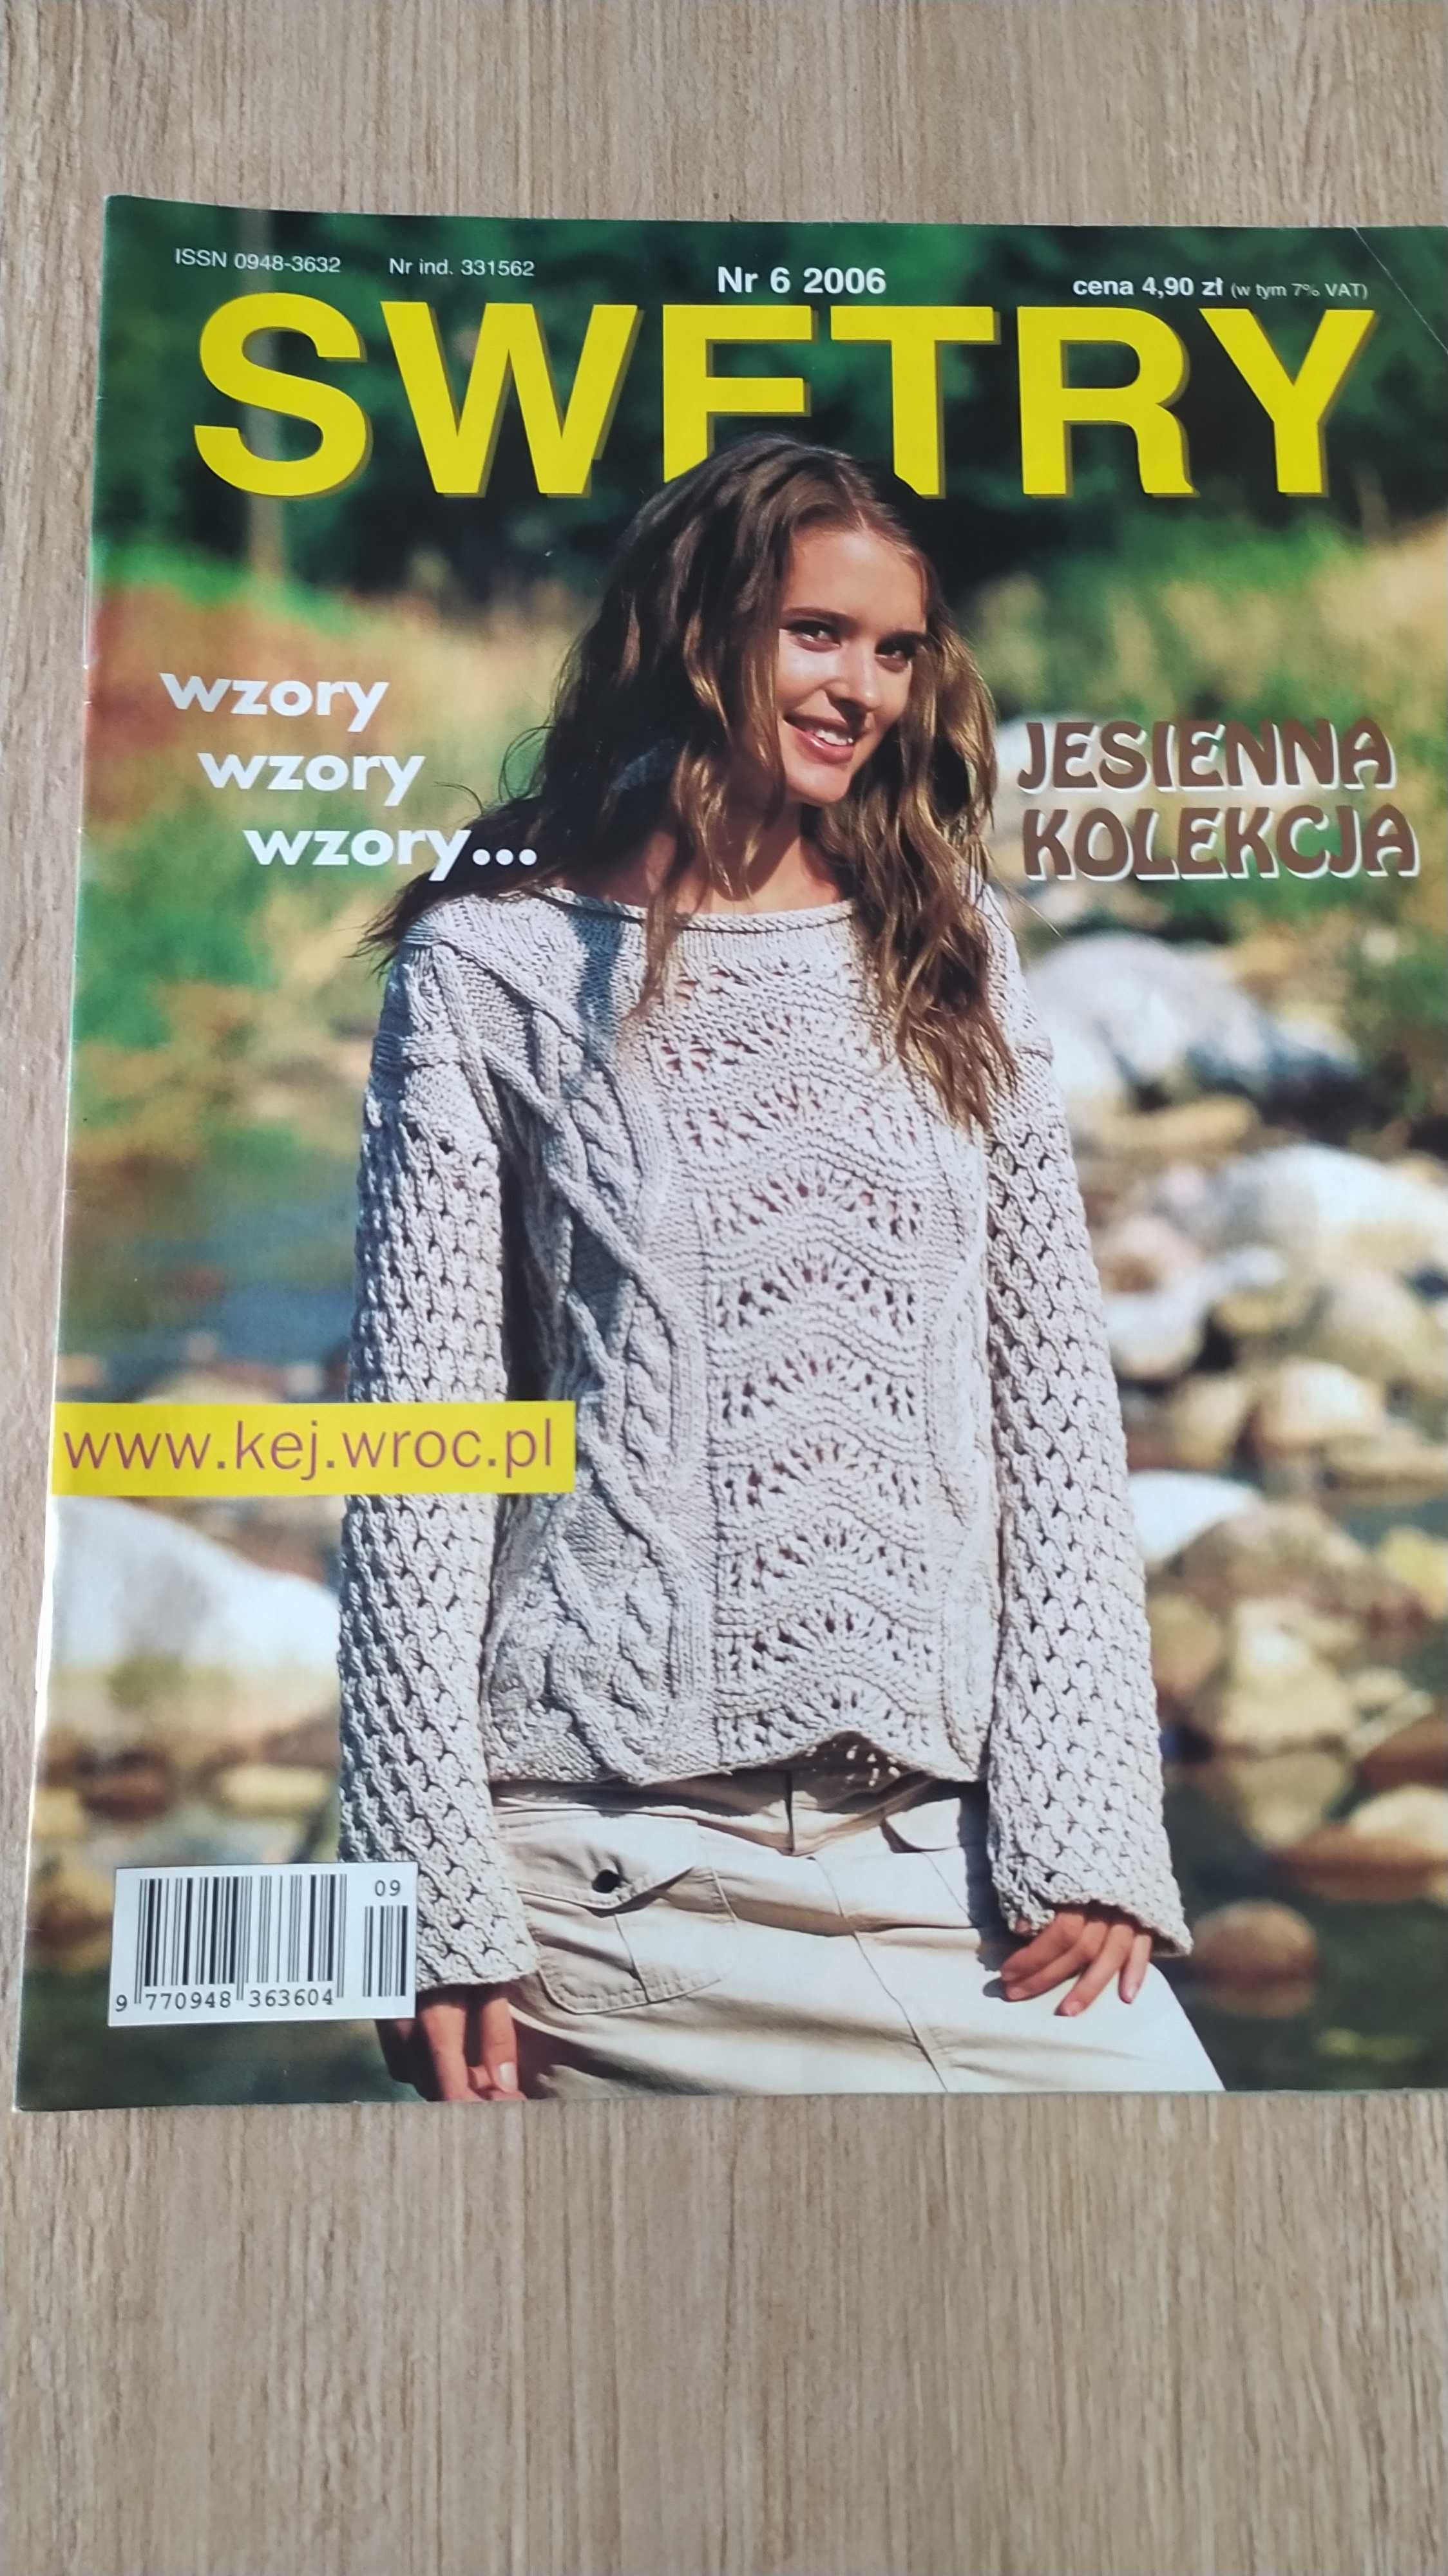 Gazetka czasopismo SWETRY na drutach